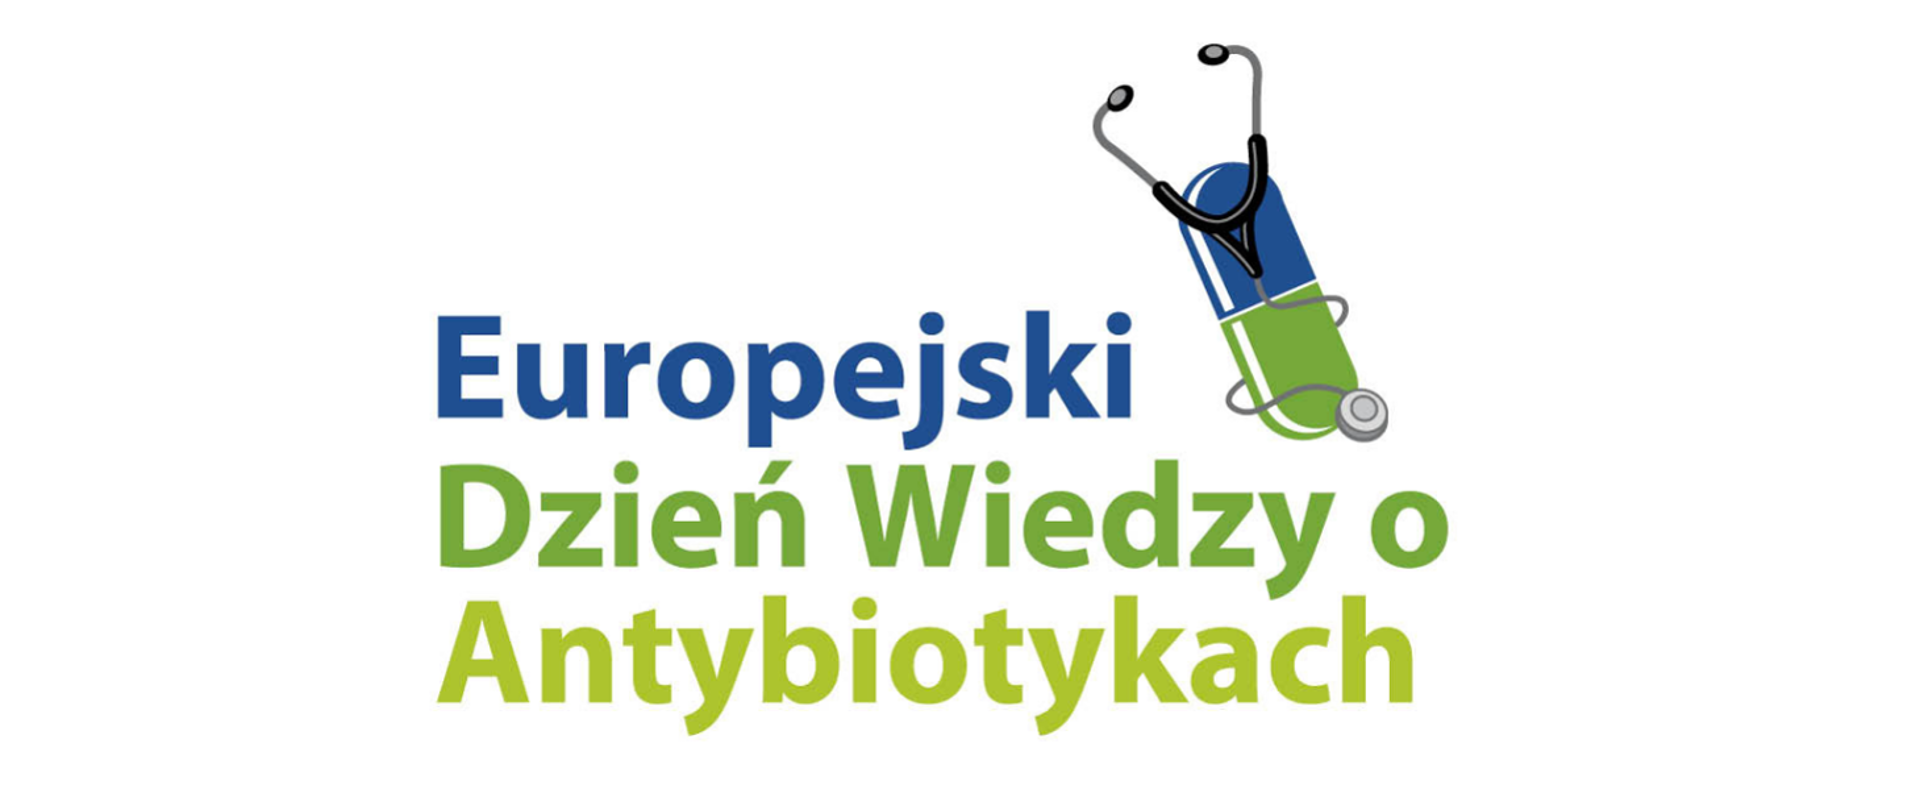 Europejski Dzień Wiedzy o Antybiotykach 